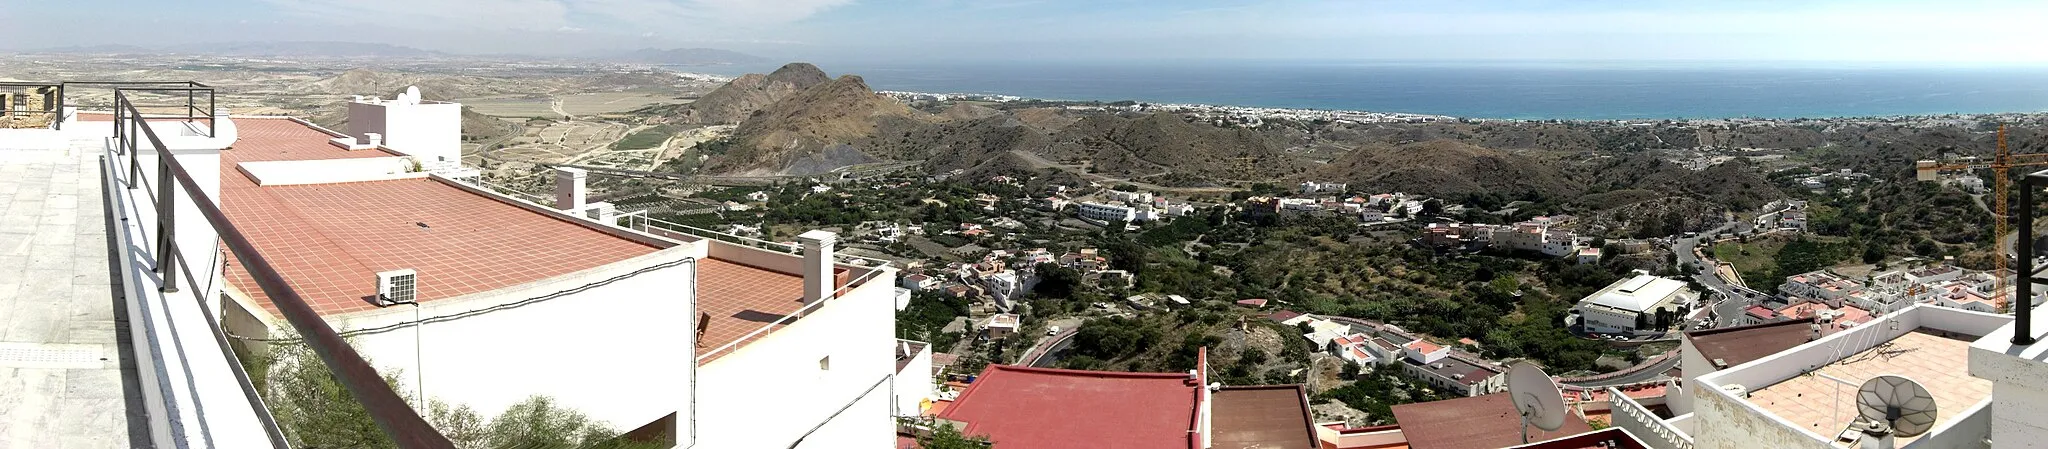 Photo showing: Mirador del castillo - vista panorámica